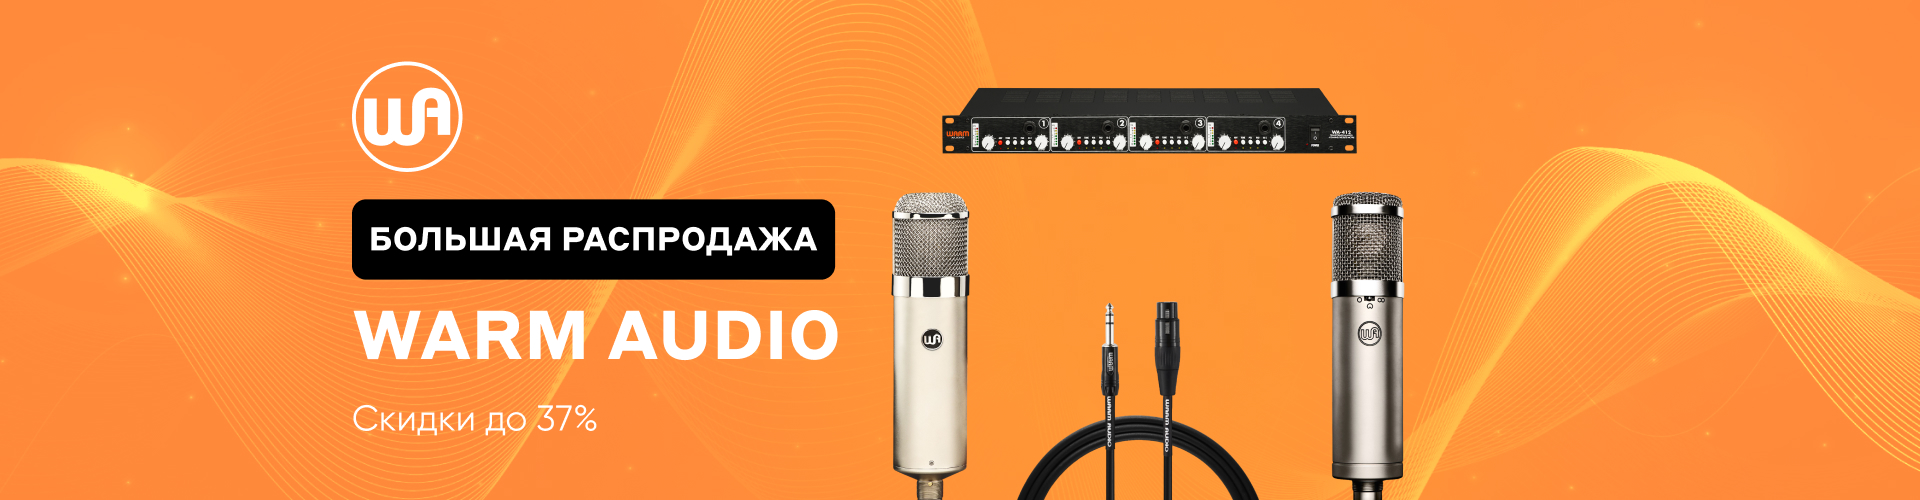  Запускаем большую распродажу студийных микрофонов, приборов обработки и готовых кабелей Warm Audio.